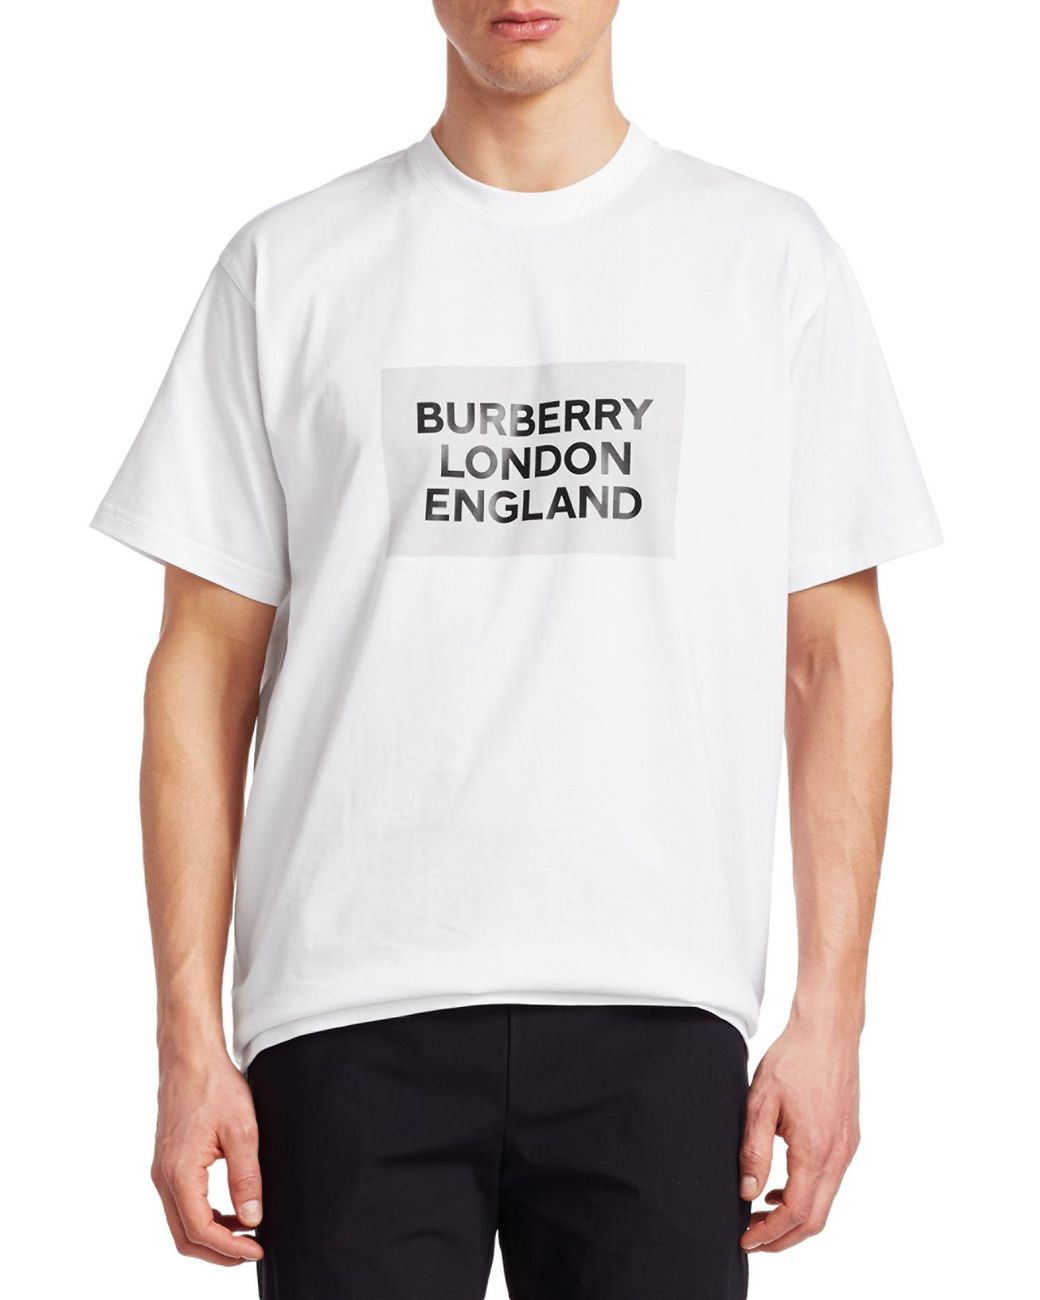 【ていないた】 BURBERRY LONDON ENGLAND カテゴリー